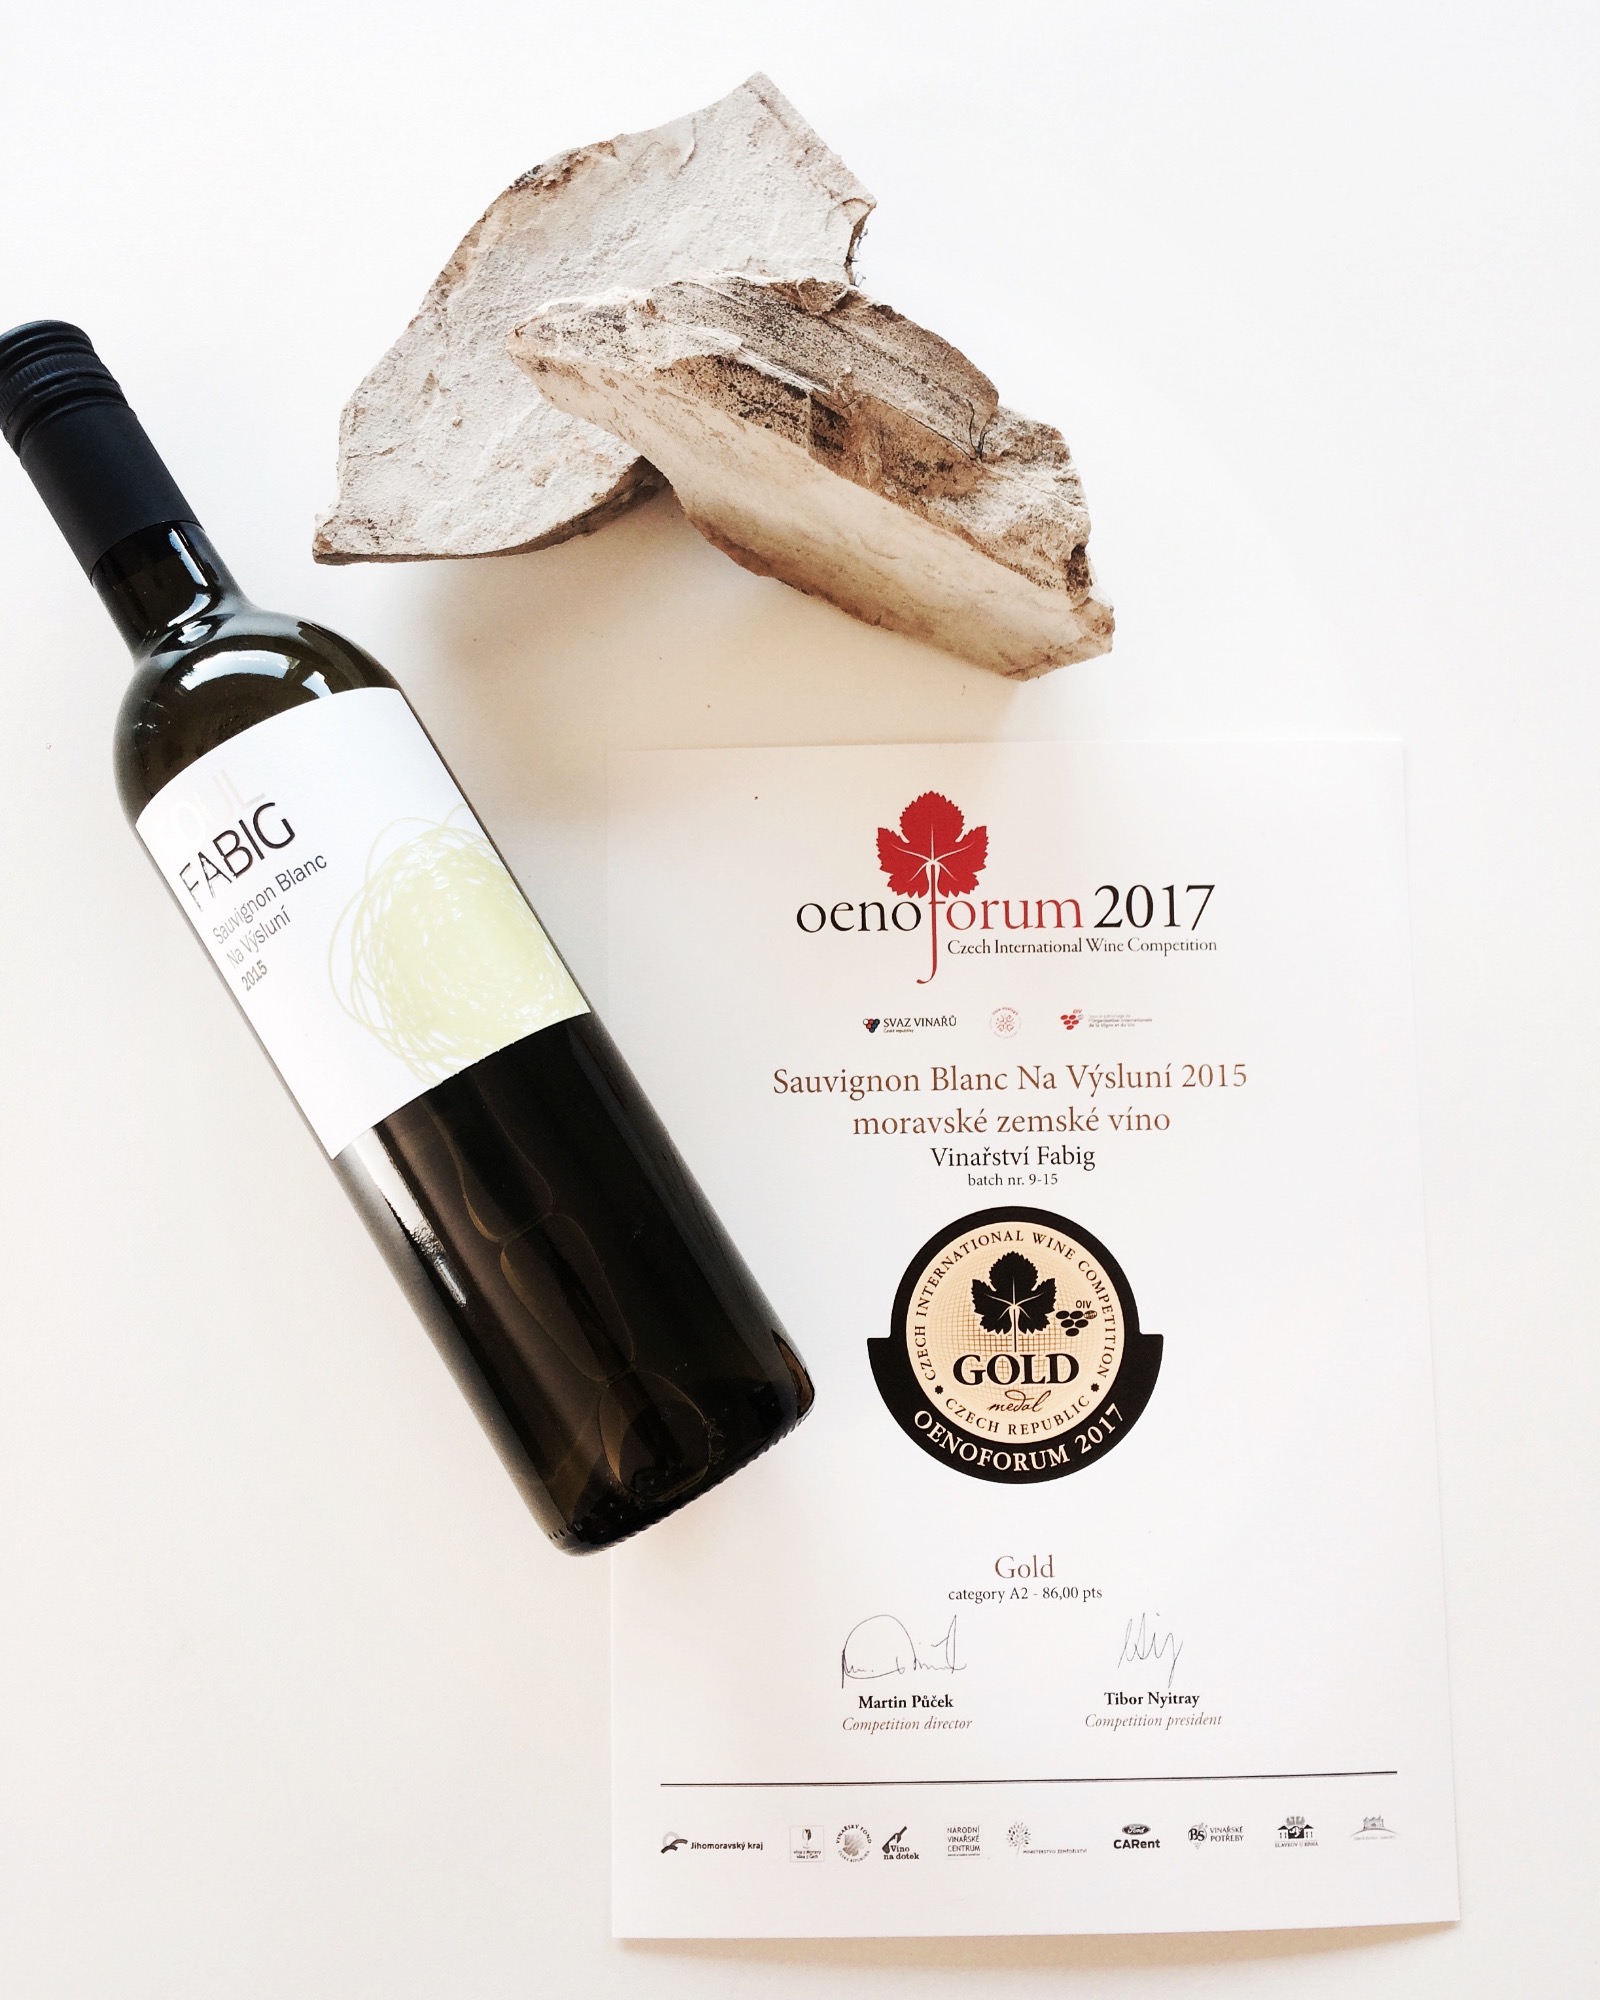 Sauvignon Blanc Na výsluní & Oenoforum 2017